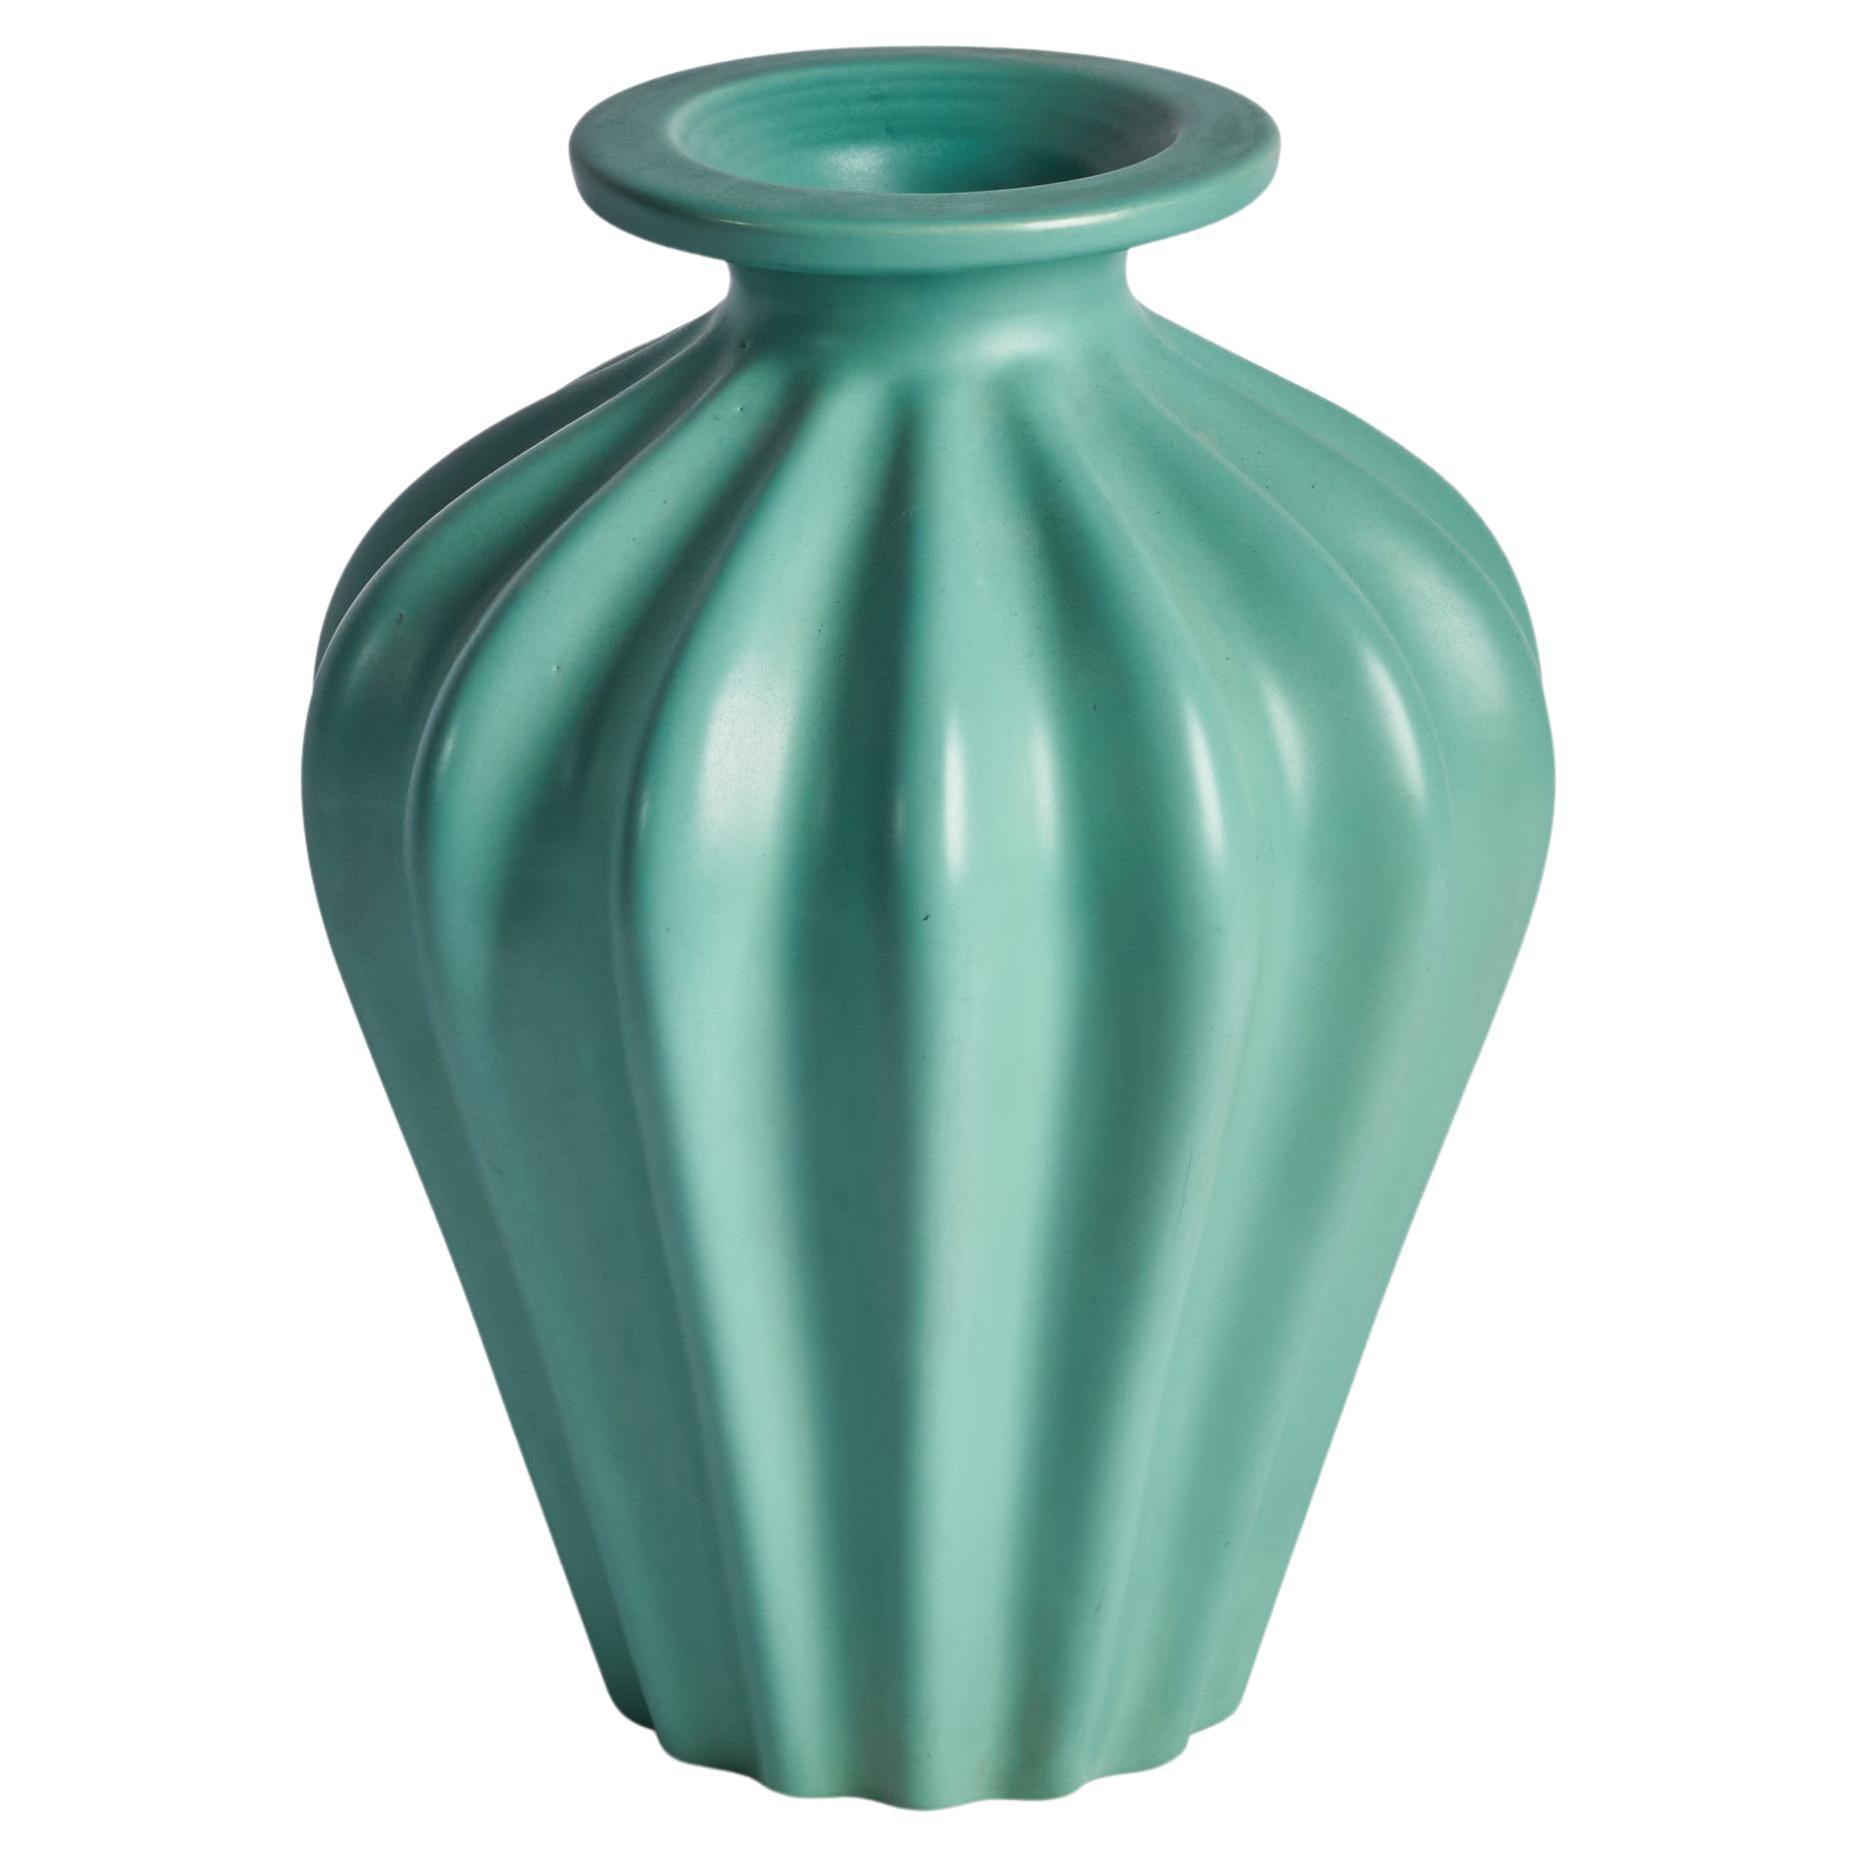 Ewald Dahlskog, Sizeable Vase, Earthenware, Sweden, 1930s For Sale